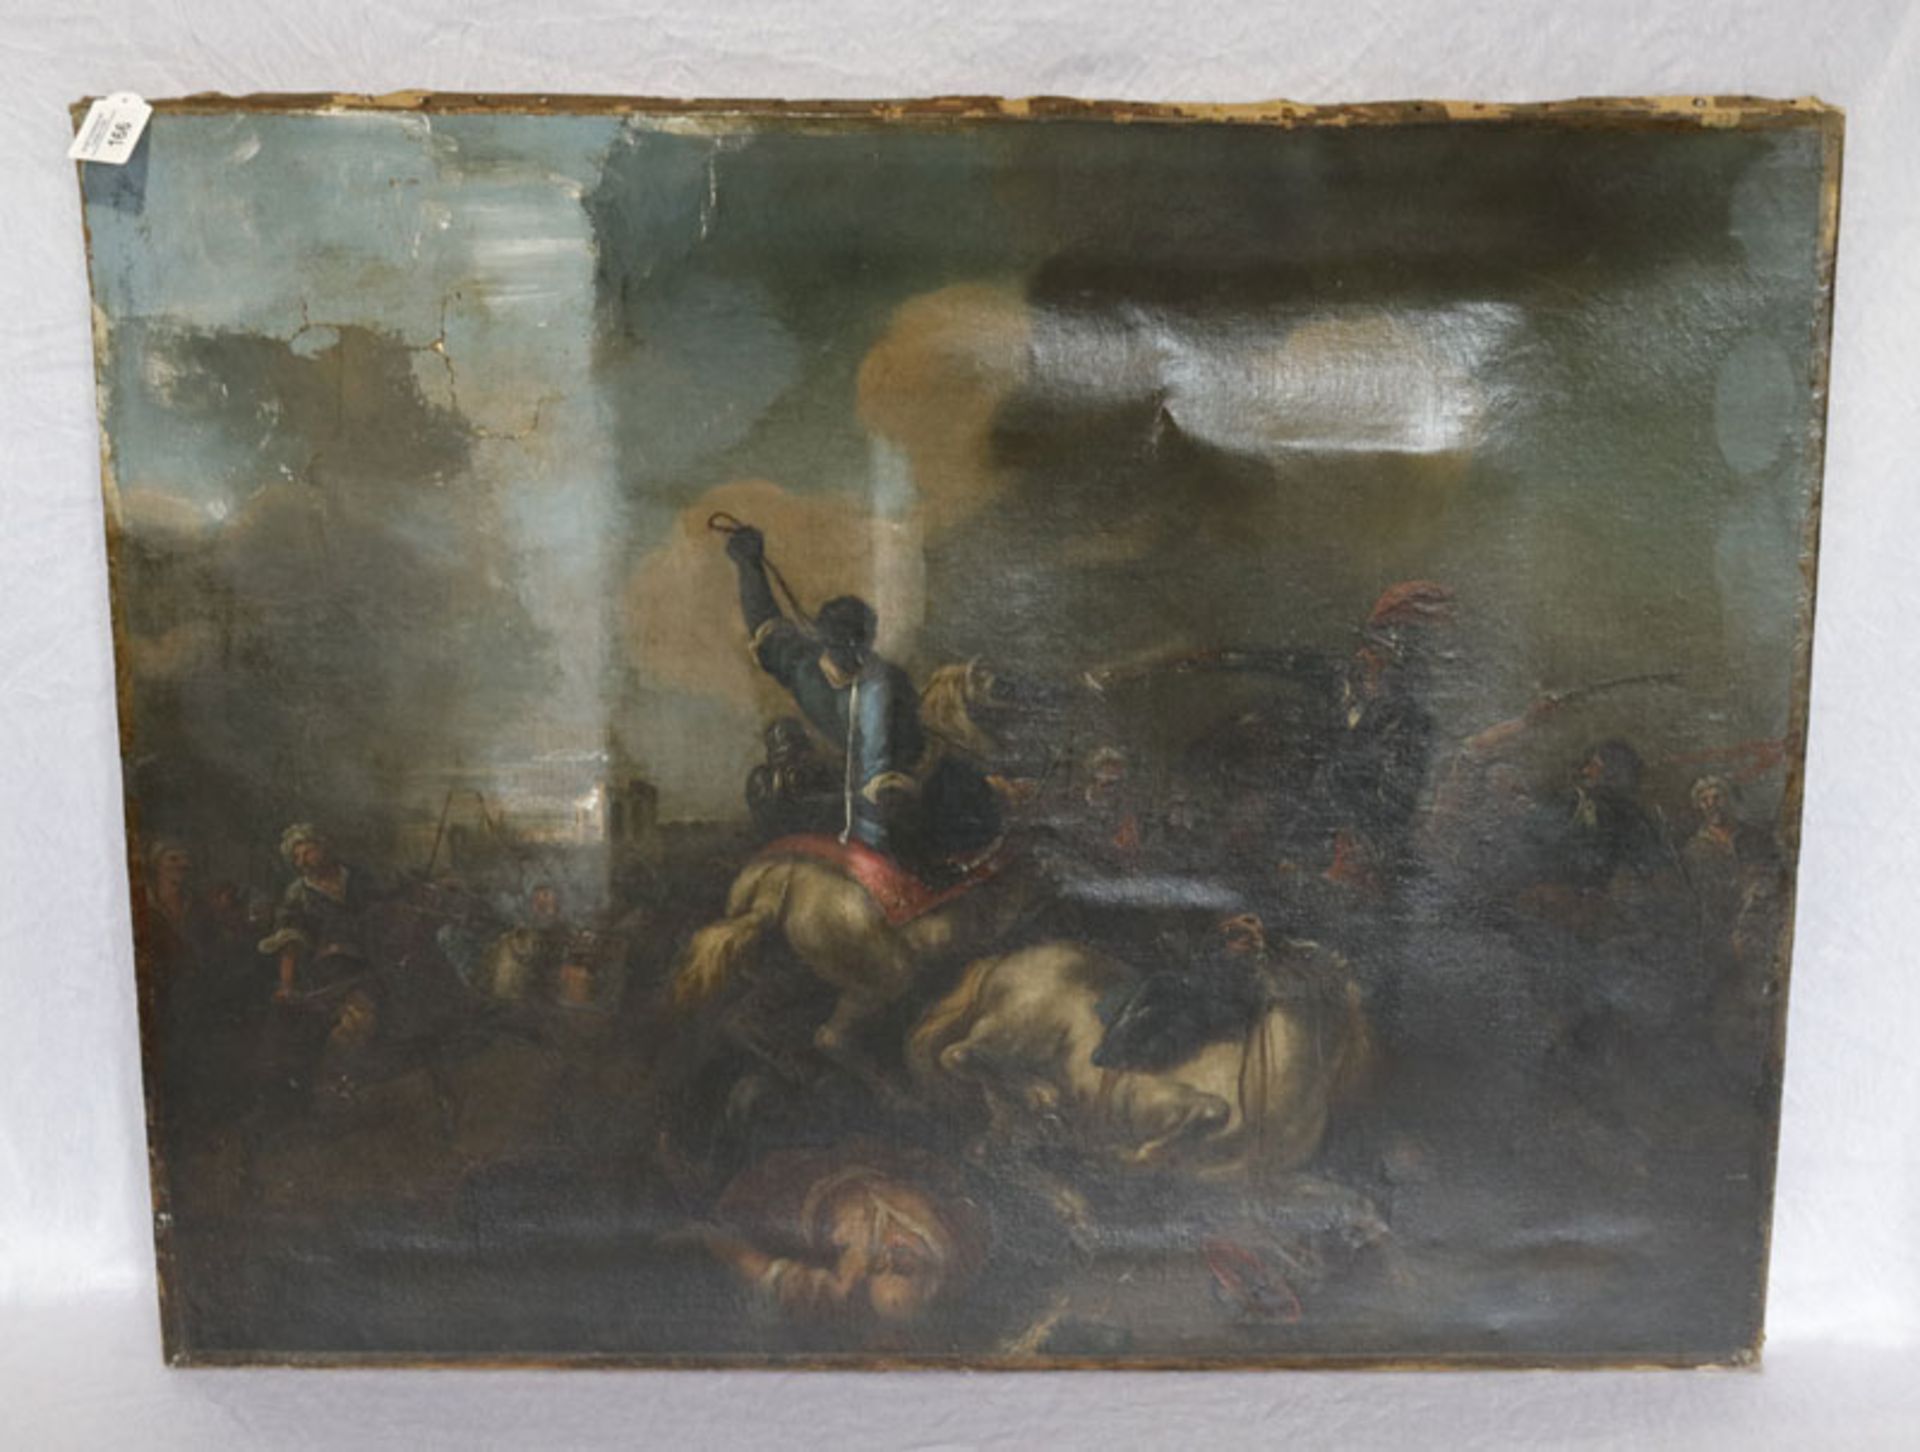 Gemälde ÖL/LW 'Schlacht gegen die Türken bei Wien ?', um 1800, LW stark beschädigt, ohne Rahmen,